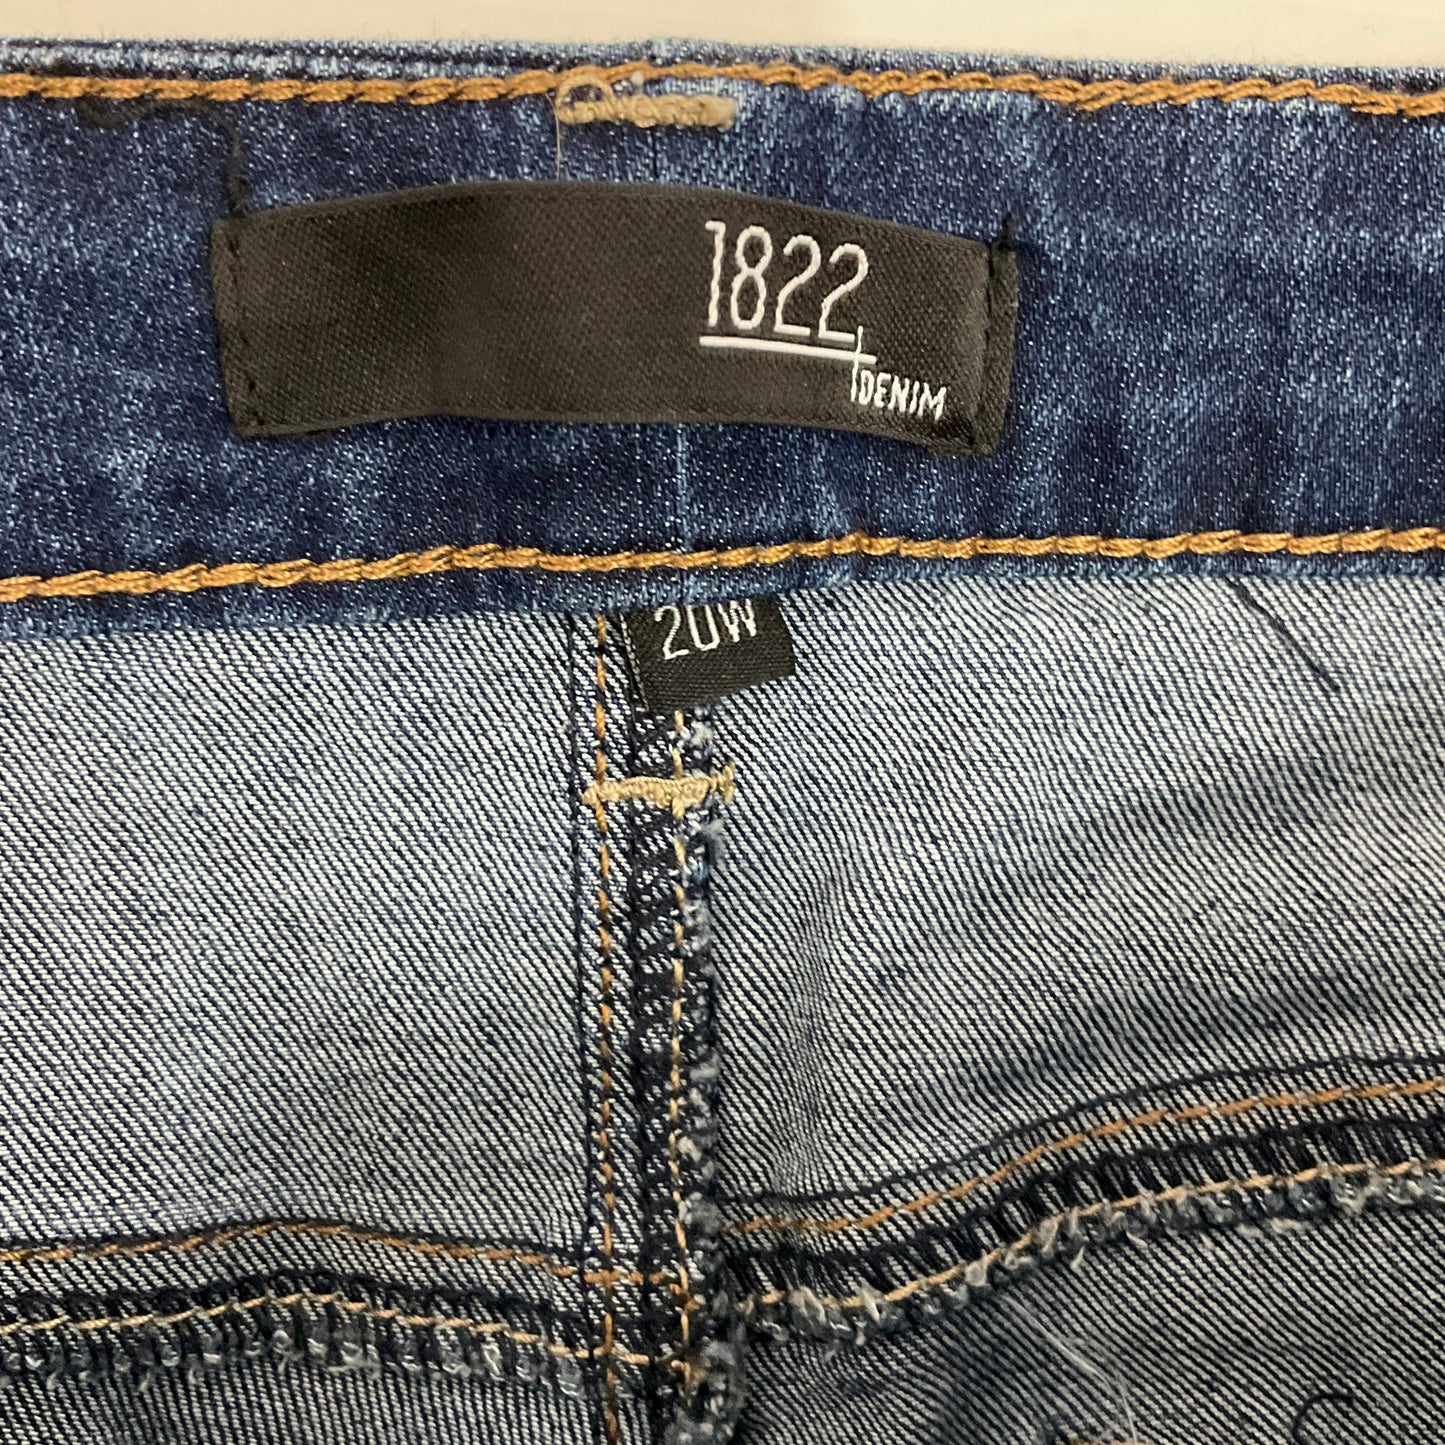 Jeans Skinny By 1822 Denim  Size: 20